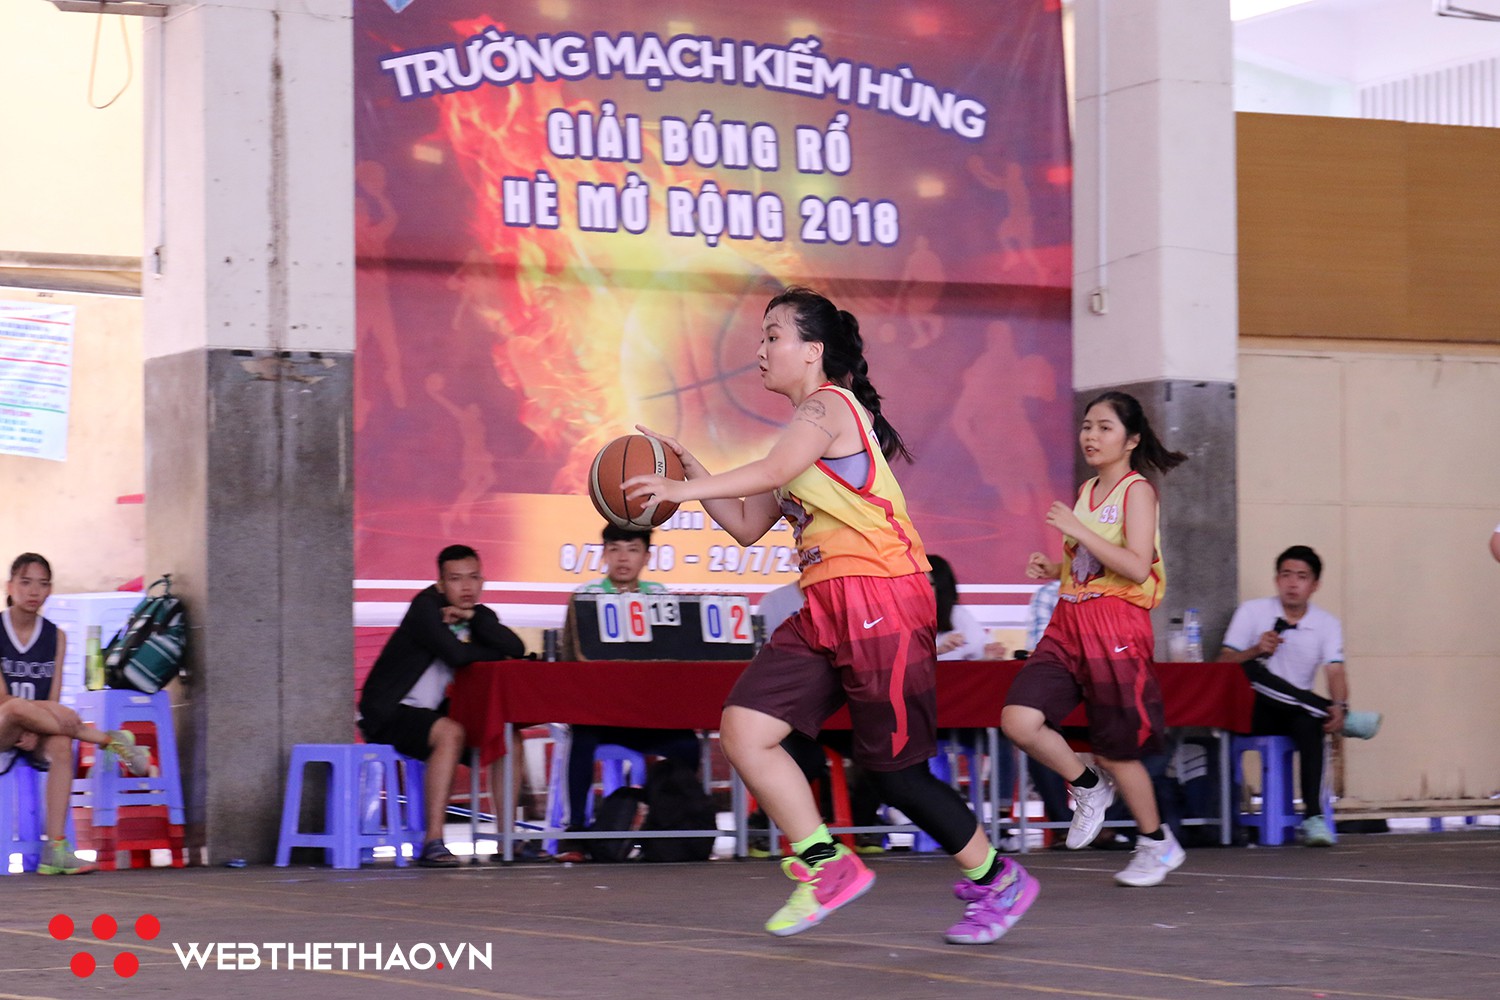 Khai mạc Giải bóng rổ hè mở rộng trường Mạch Kiếm Hùng, sân chơi học đường hấp dẫn nhất mùa hè 2018 - Ảnh 1.